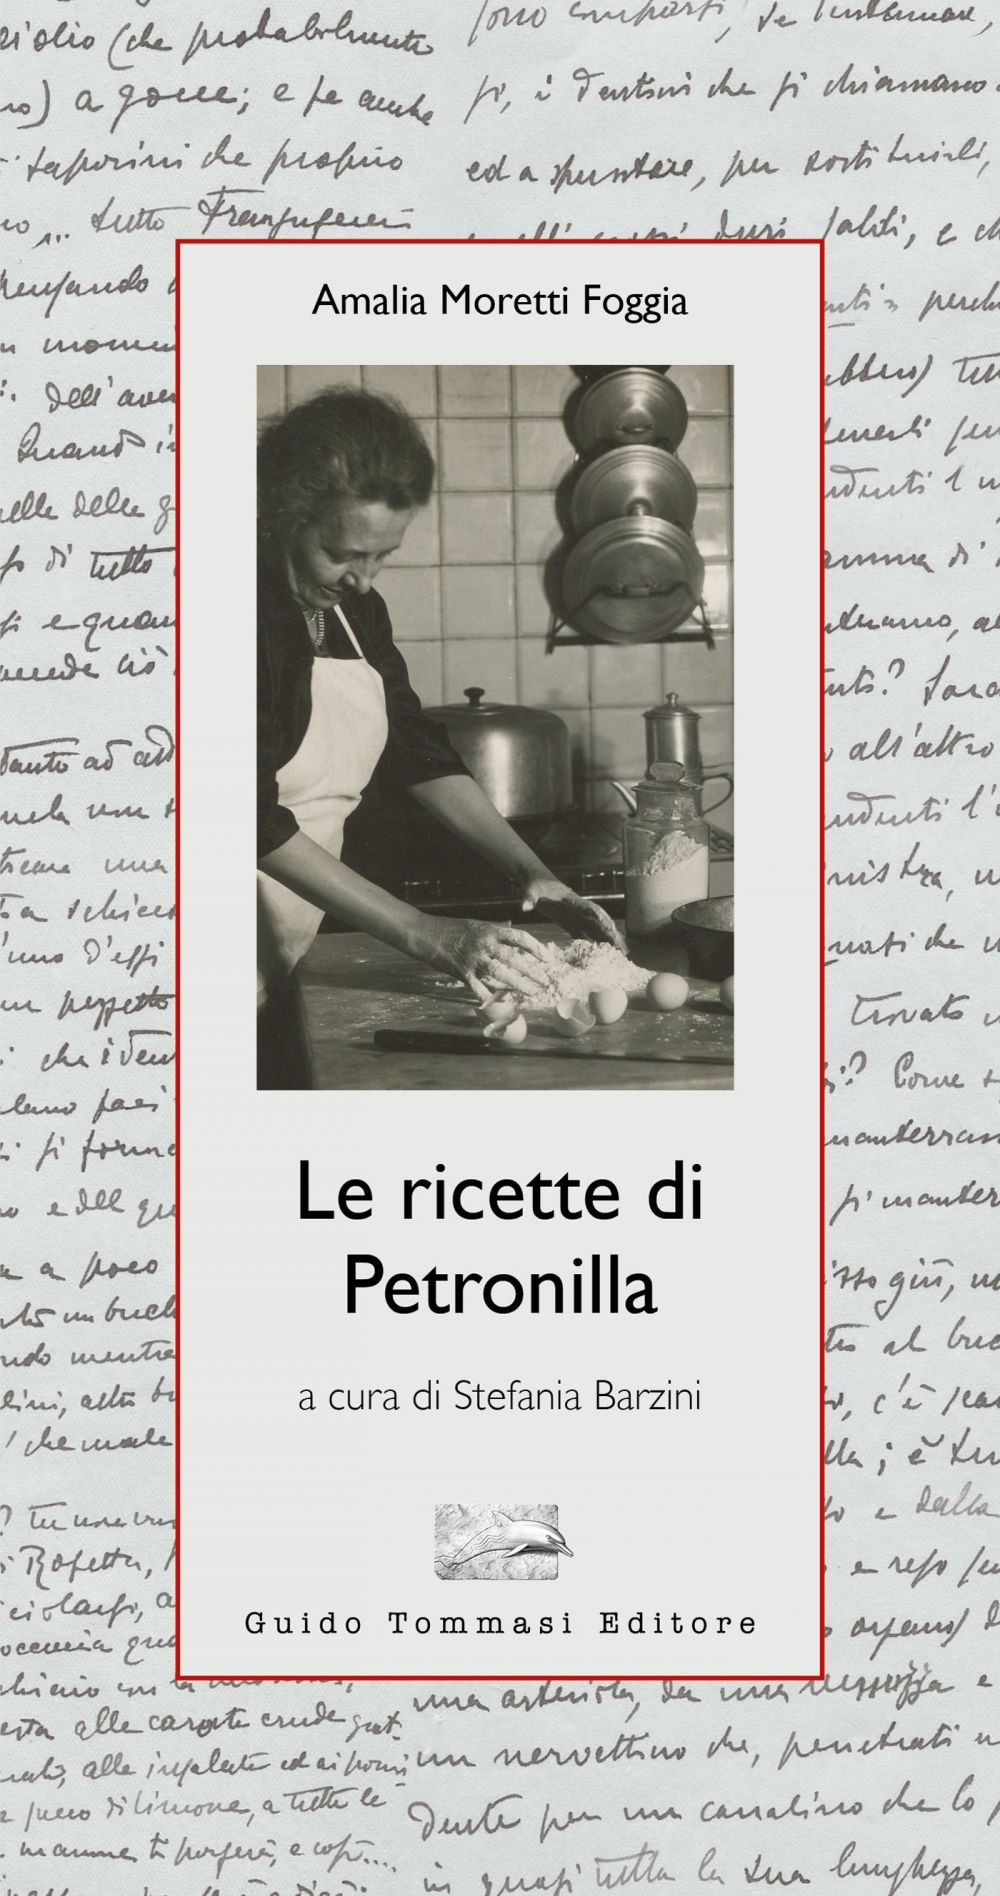 Le ricette di Petronilla - Librerie.coop